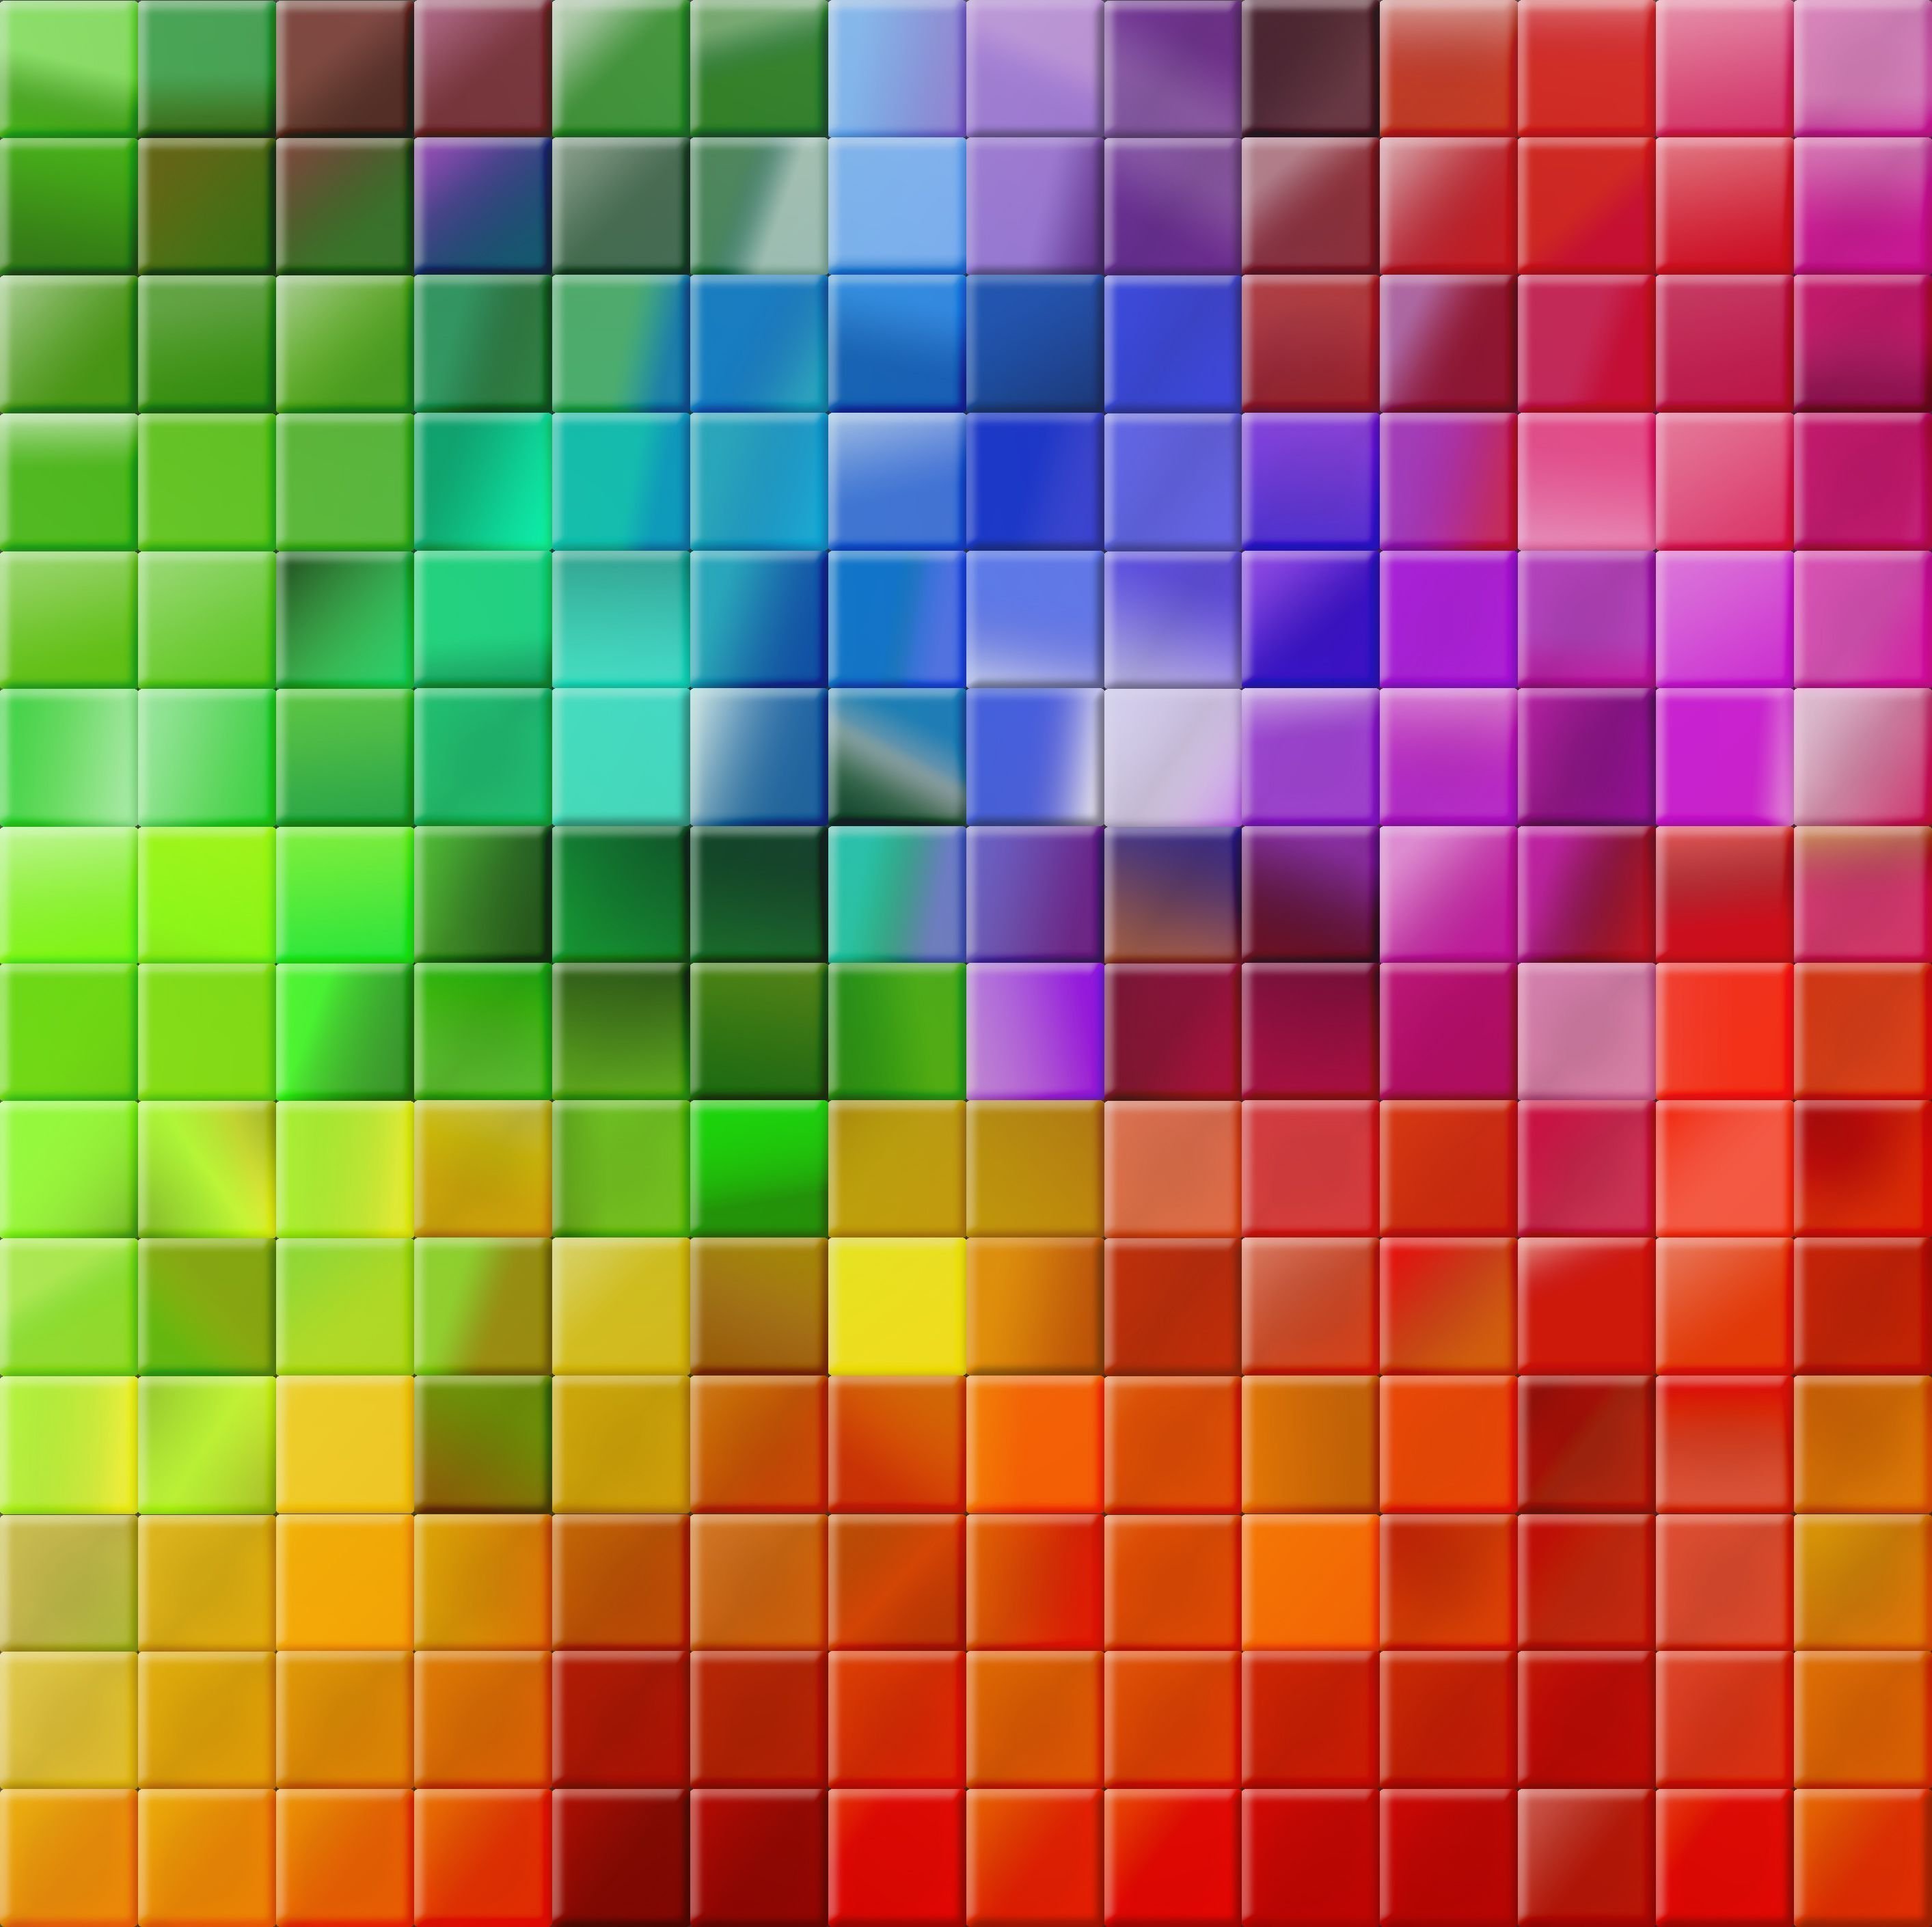 Маленький цветные квадратики. Цветные квадраты. Разноцветные квадратики. Разноцветные квадрики. Разноцветный фон.